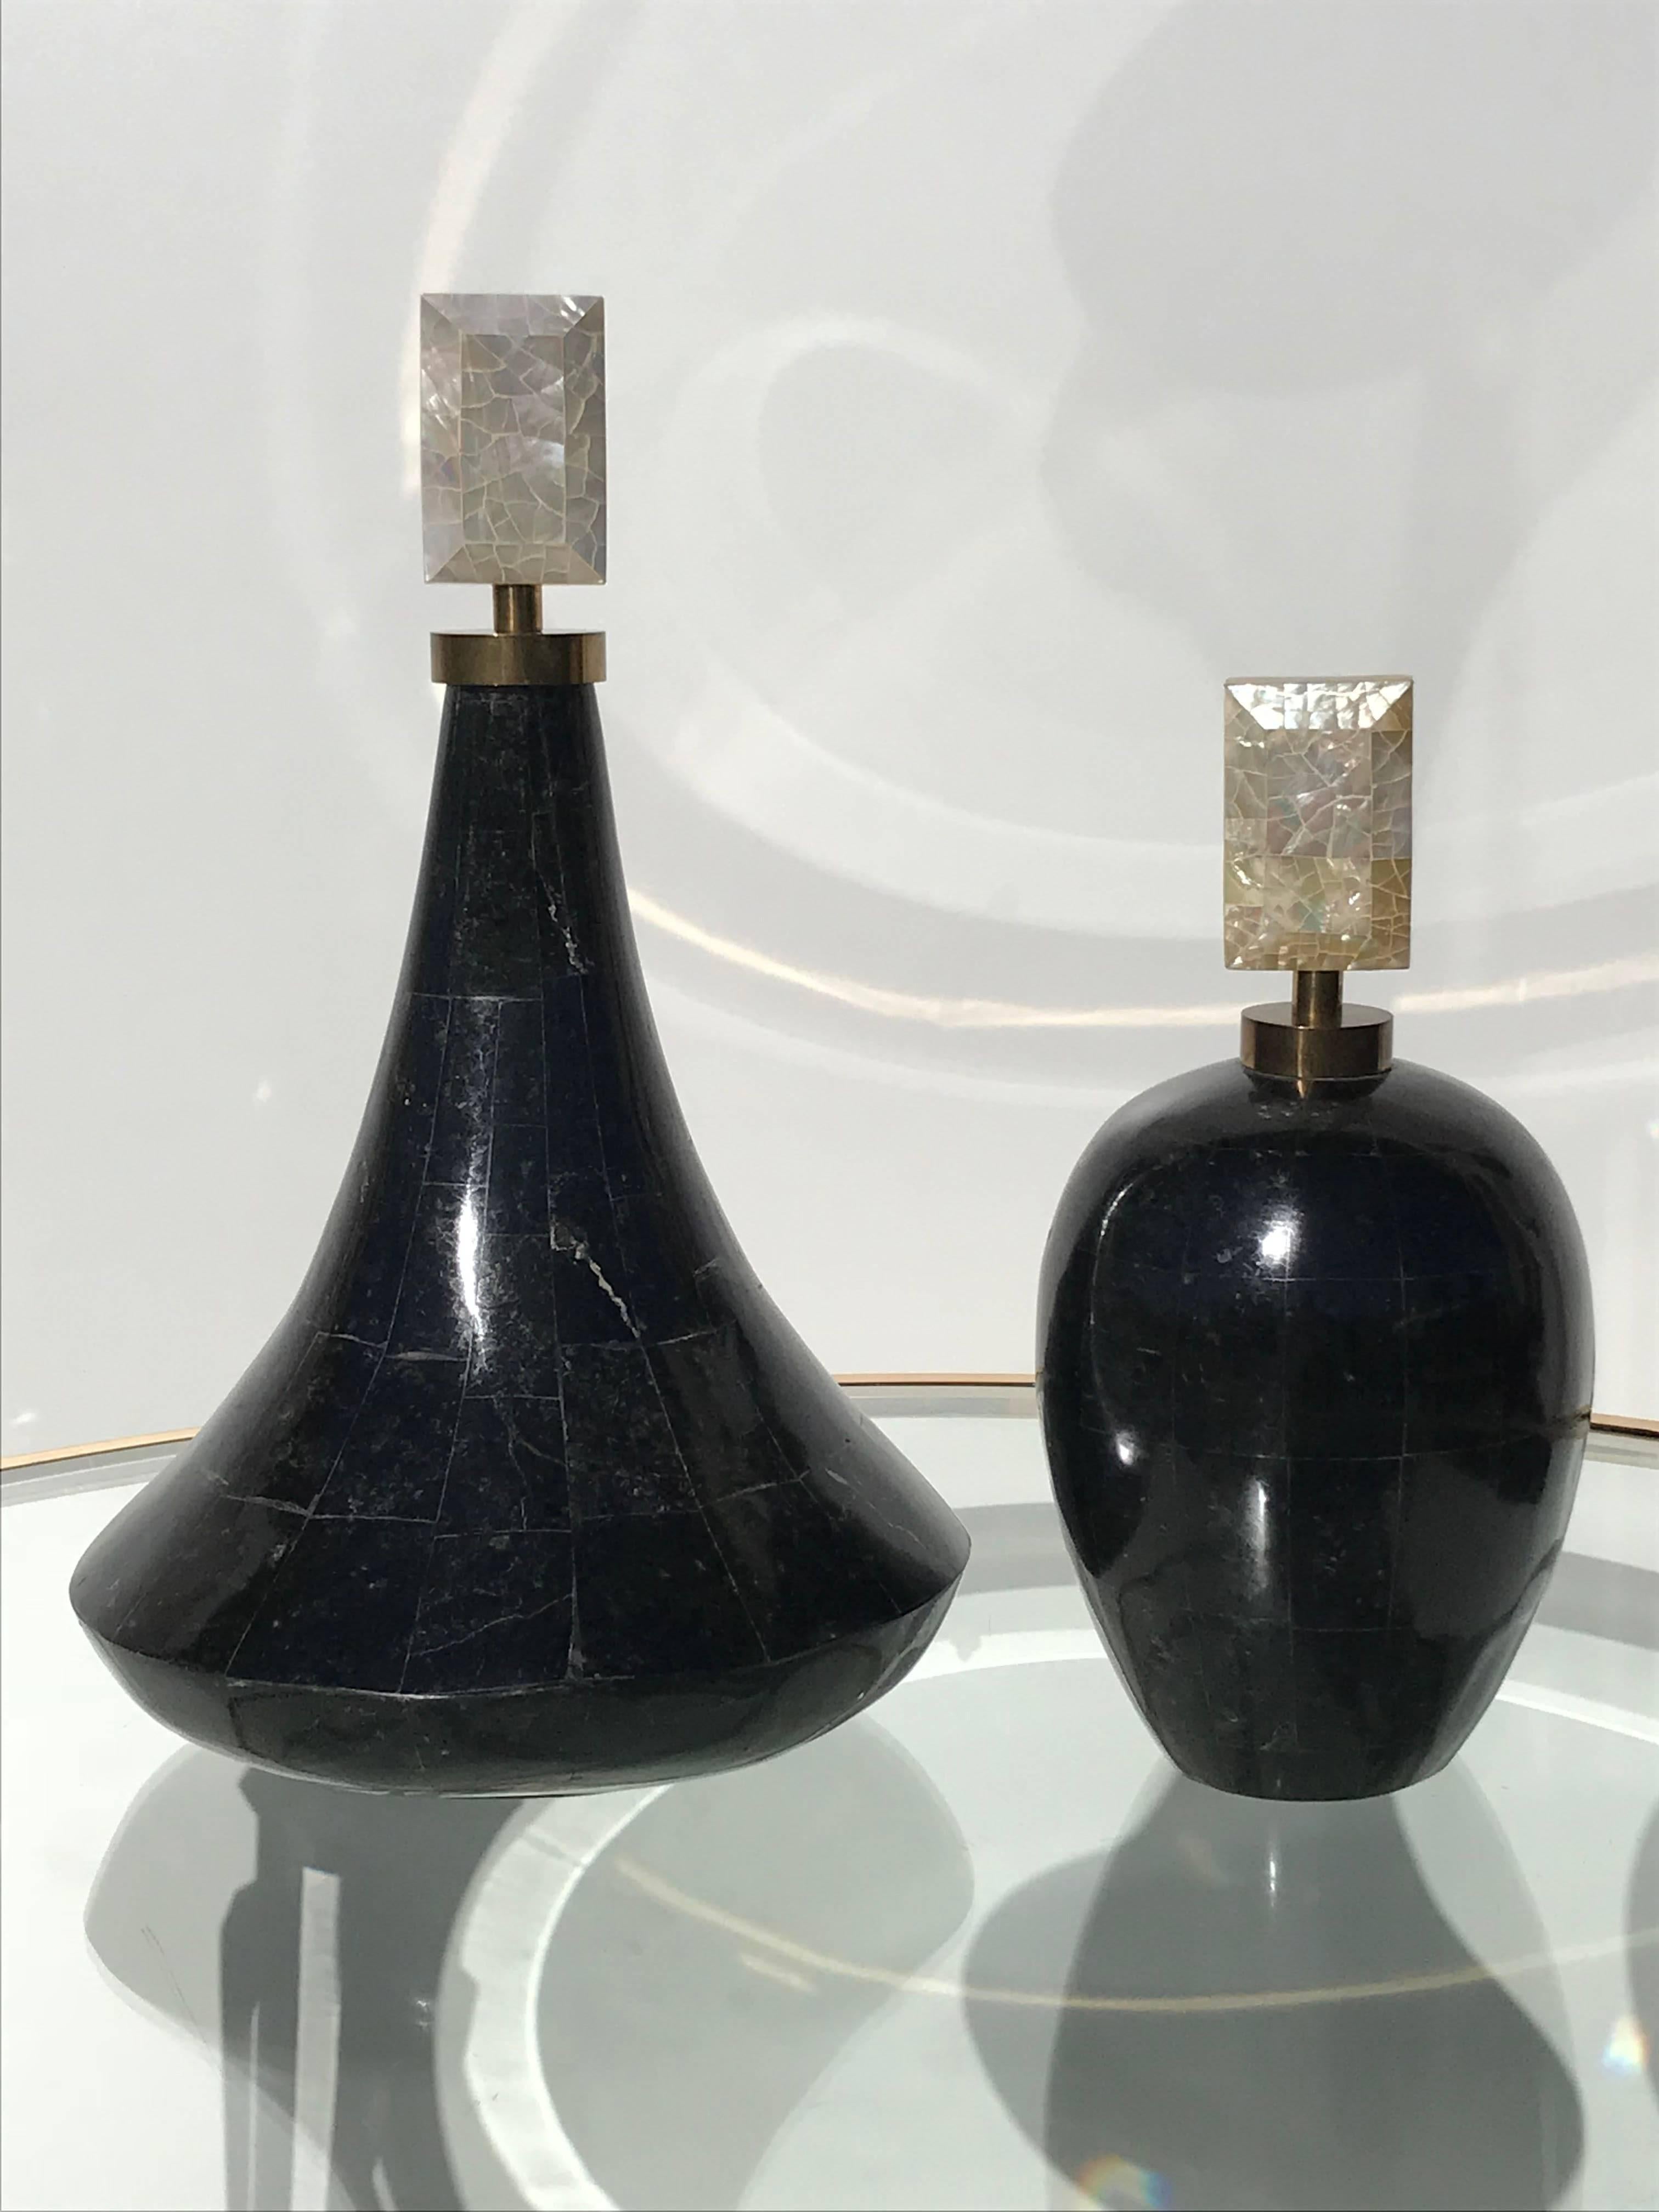 Deux flacons de parfum décoratifs en pierre tessellée par Maitland Smith
Mesures : La grande bouteille mesure 15 pouces de haut par 9 pouces de diamètre.
Petite bouteille de 11 pouces de haut par 6 pouces de diamètre.